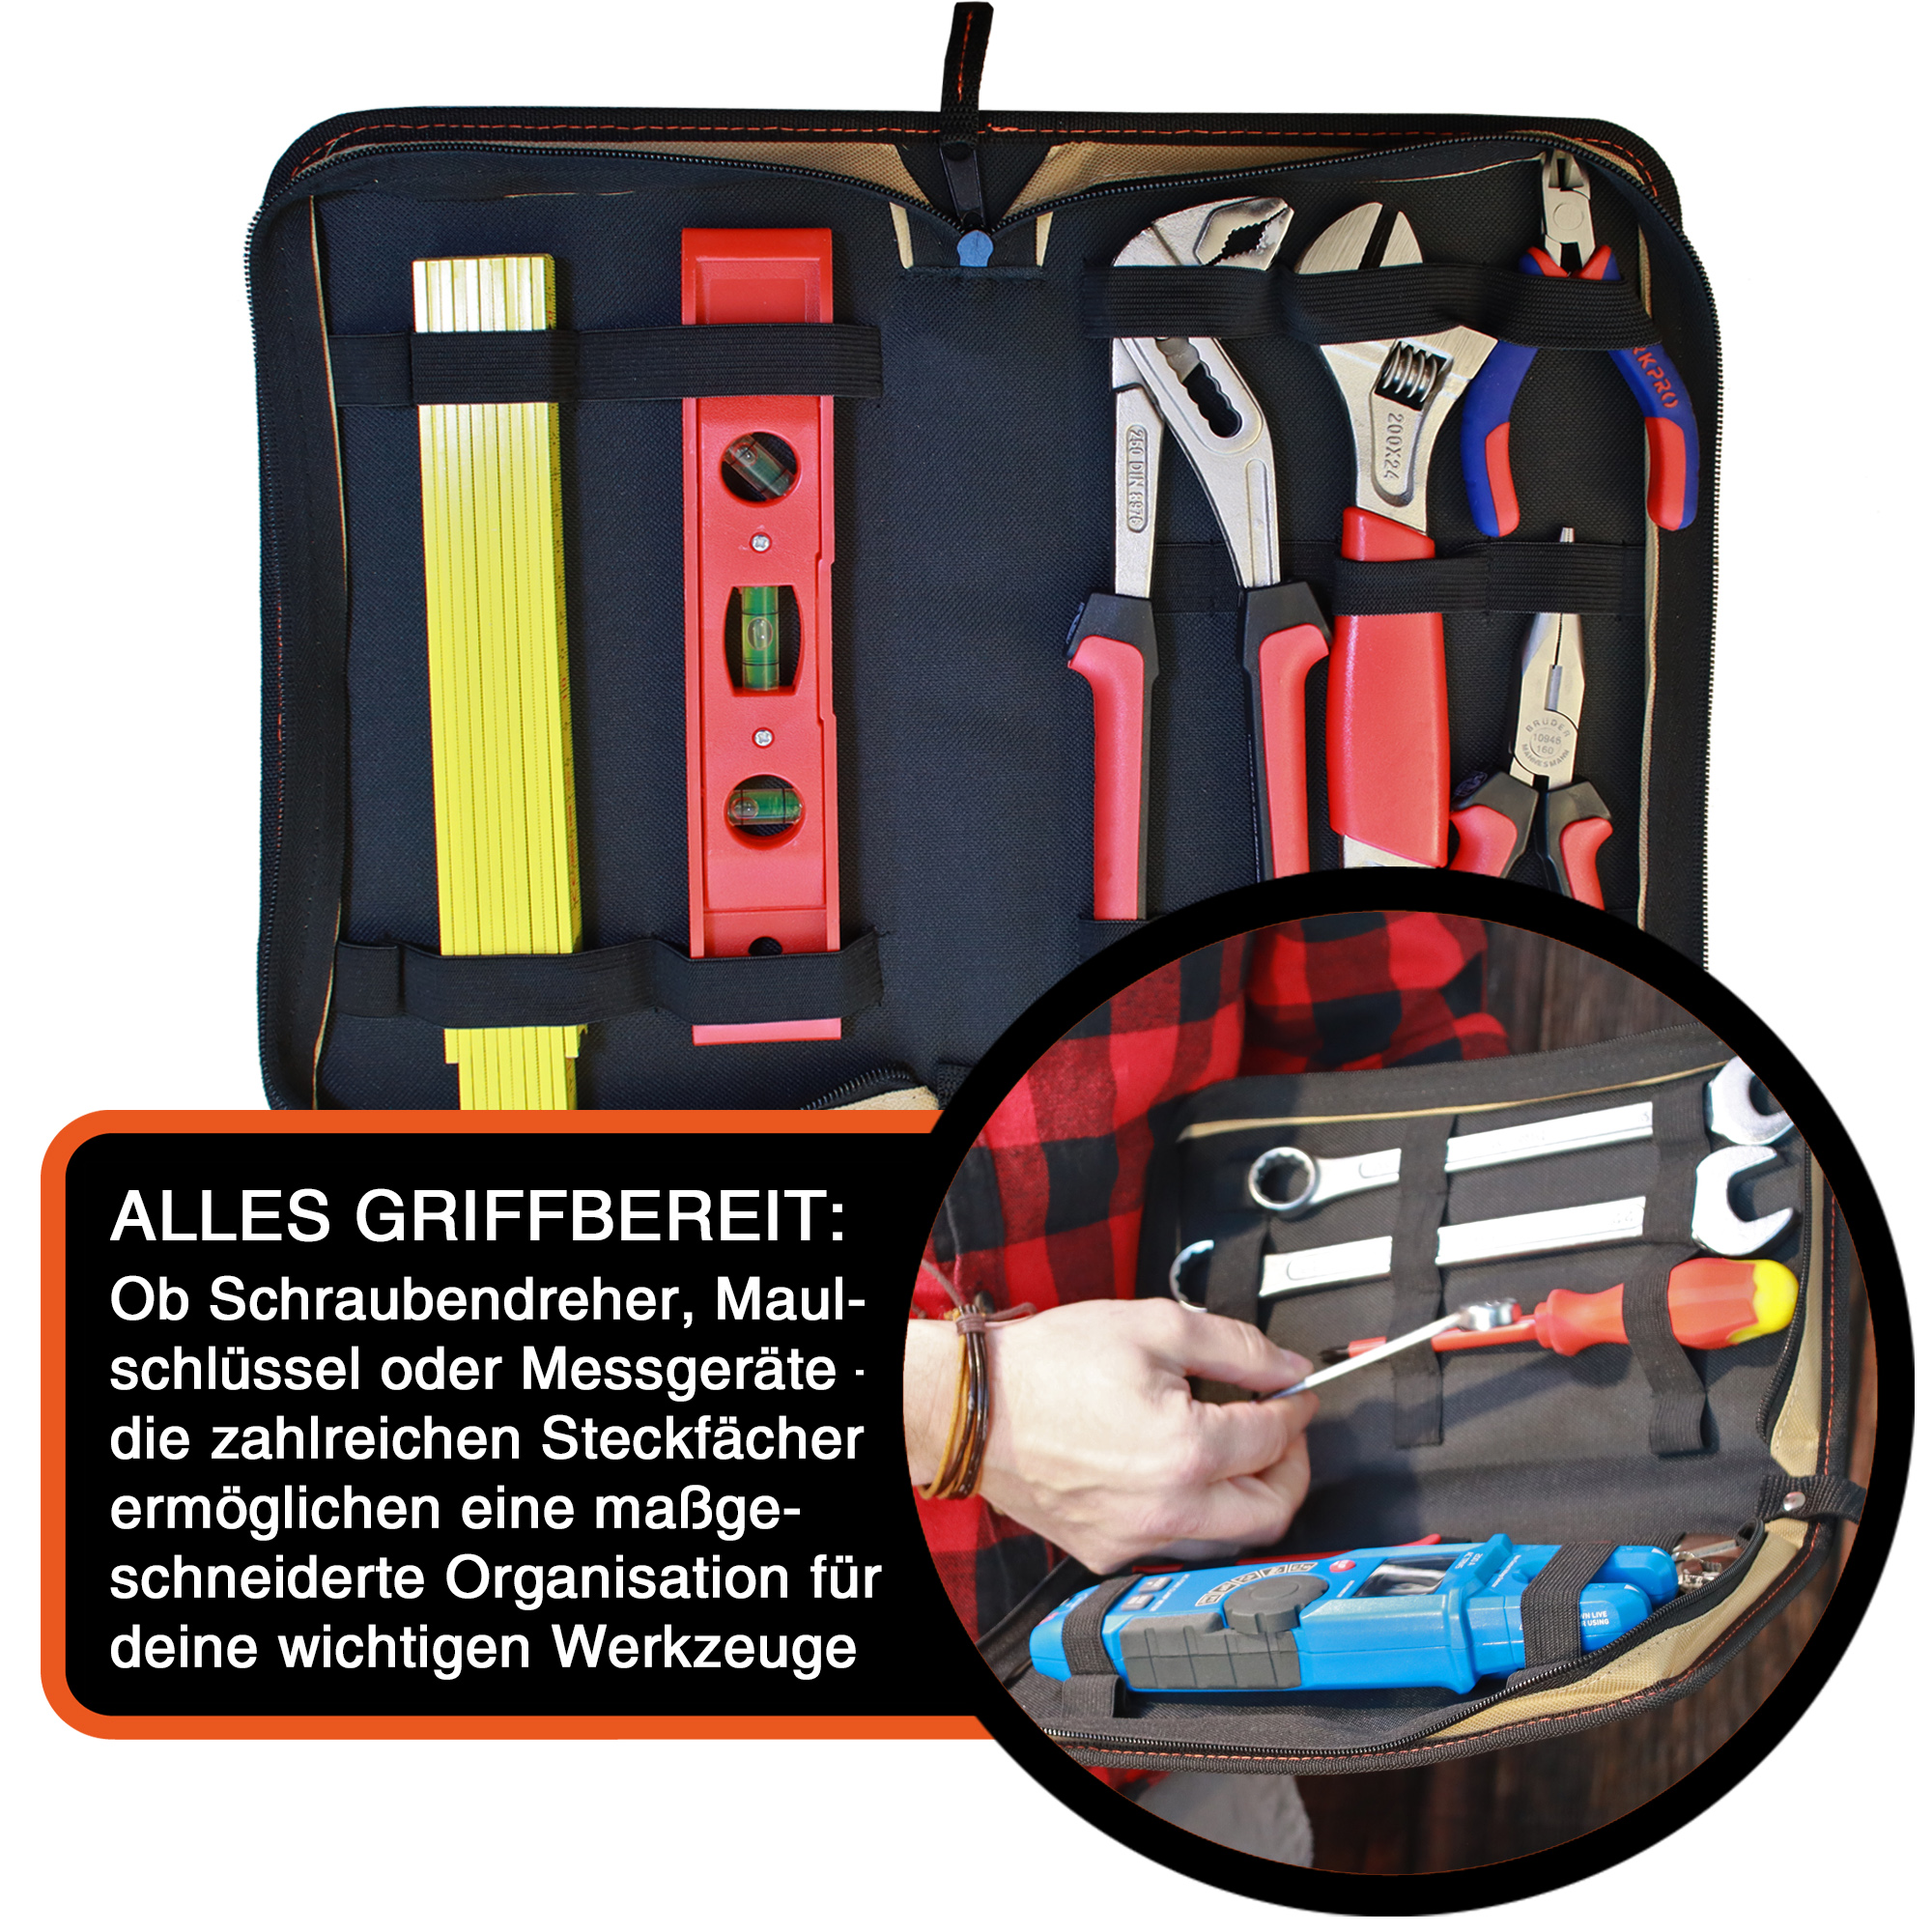 "ZipCaddy L" Werkzeug Organizer 31x17x5cm, mit Außentasche und 17 Halteschlaufen, Sand-Schwarz